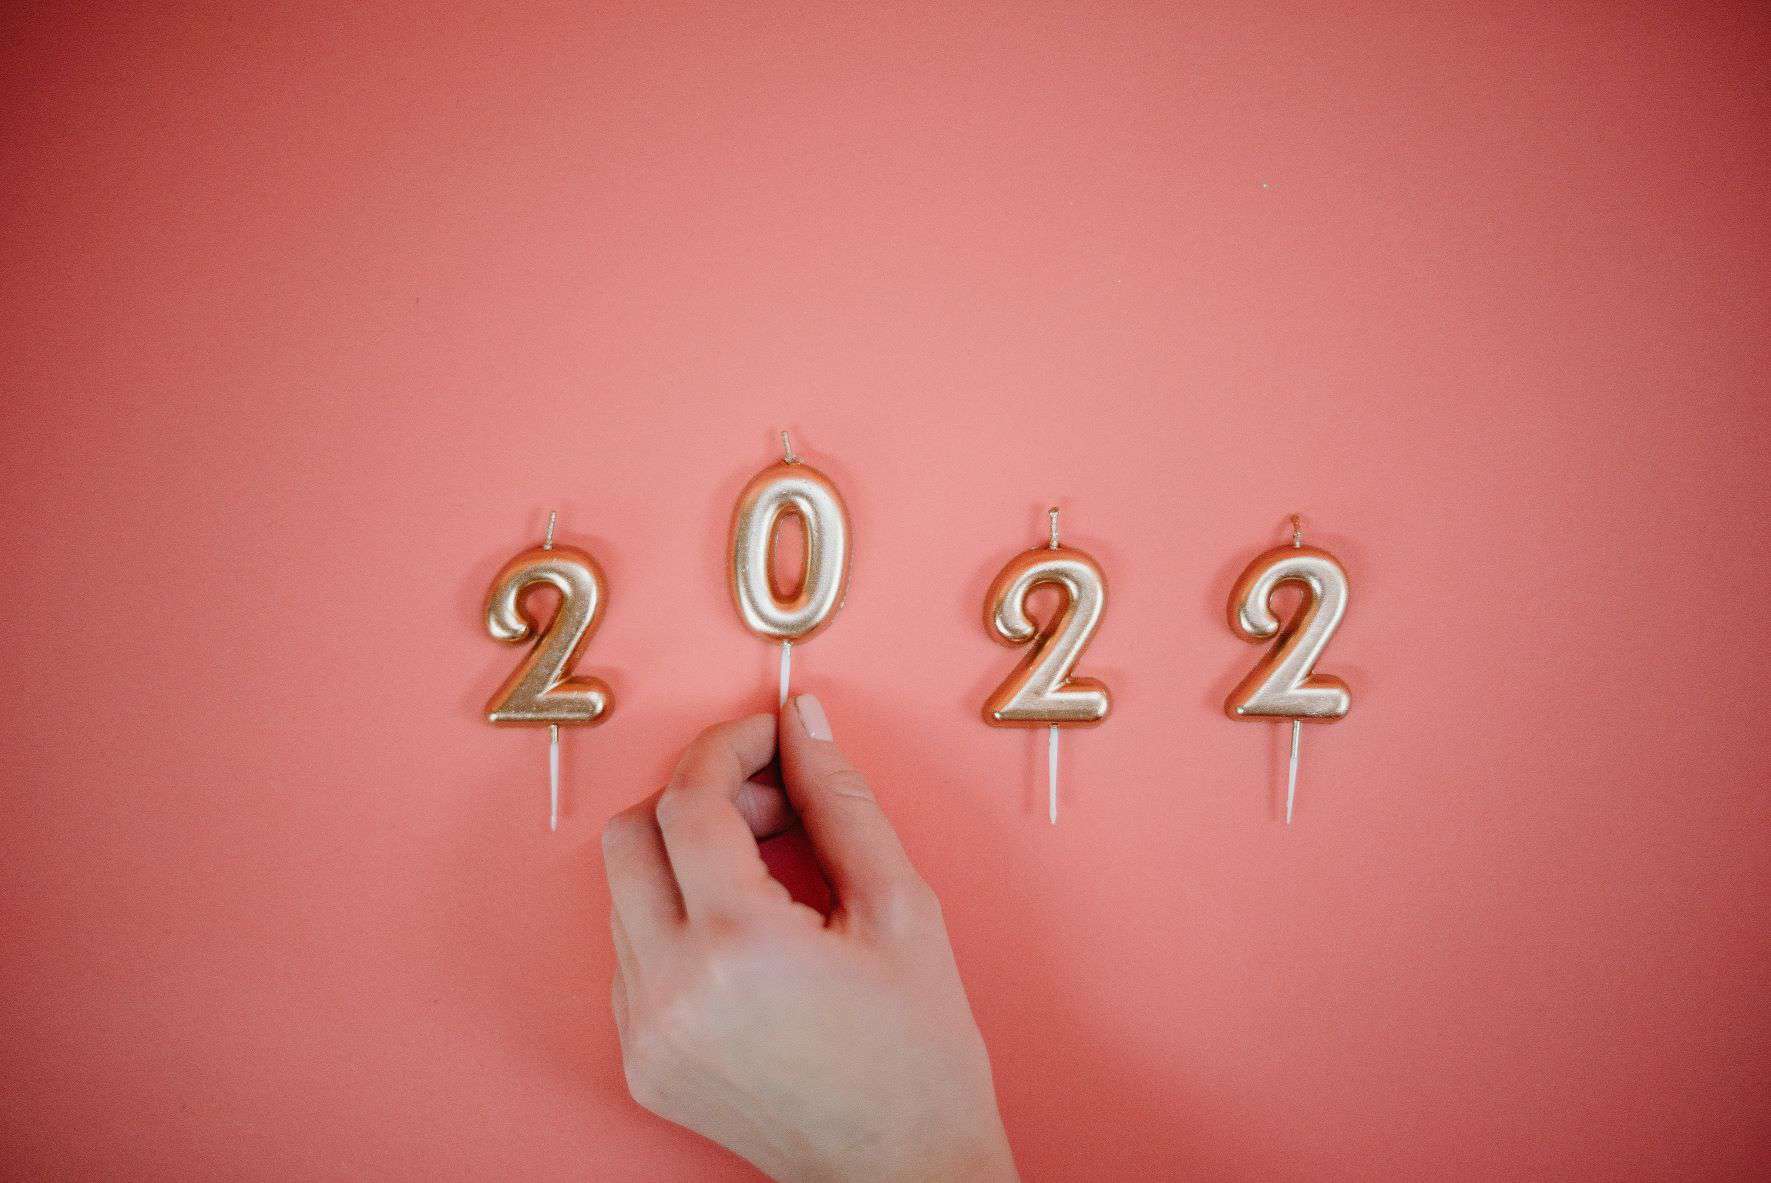 Diese 10 HR-Trends bestimmen das Jahr 2022